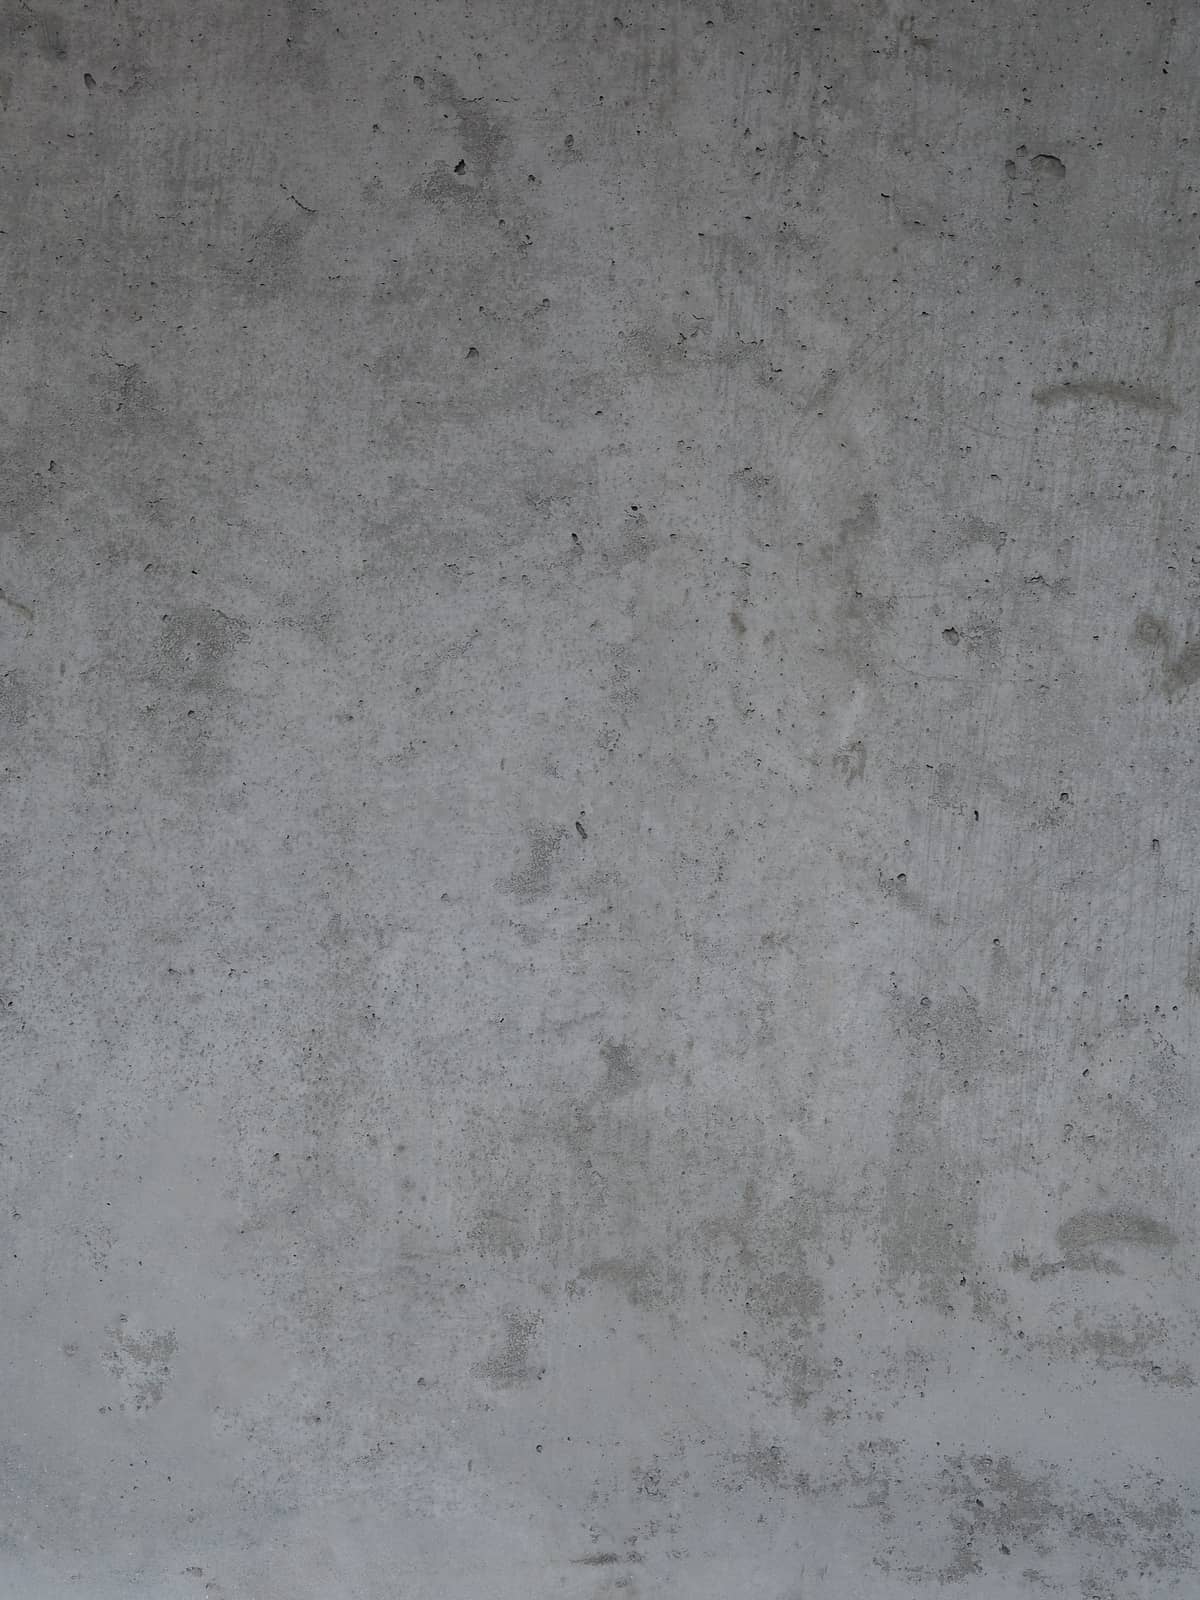 luxury modern cast concrete surface texture - background by Henkeova